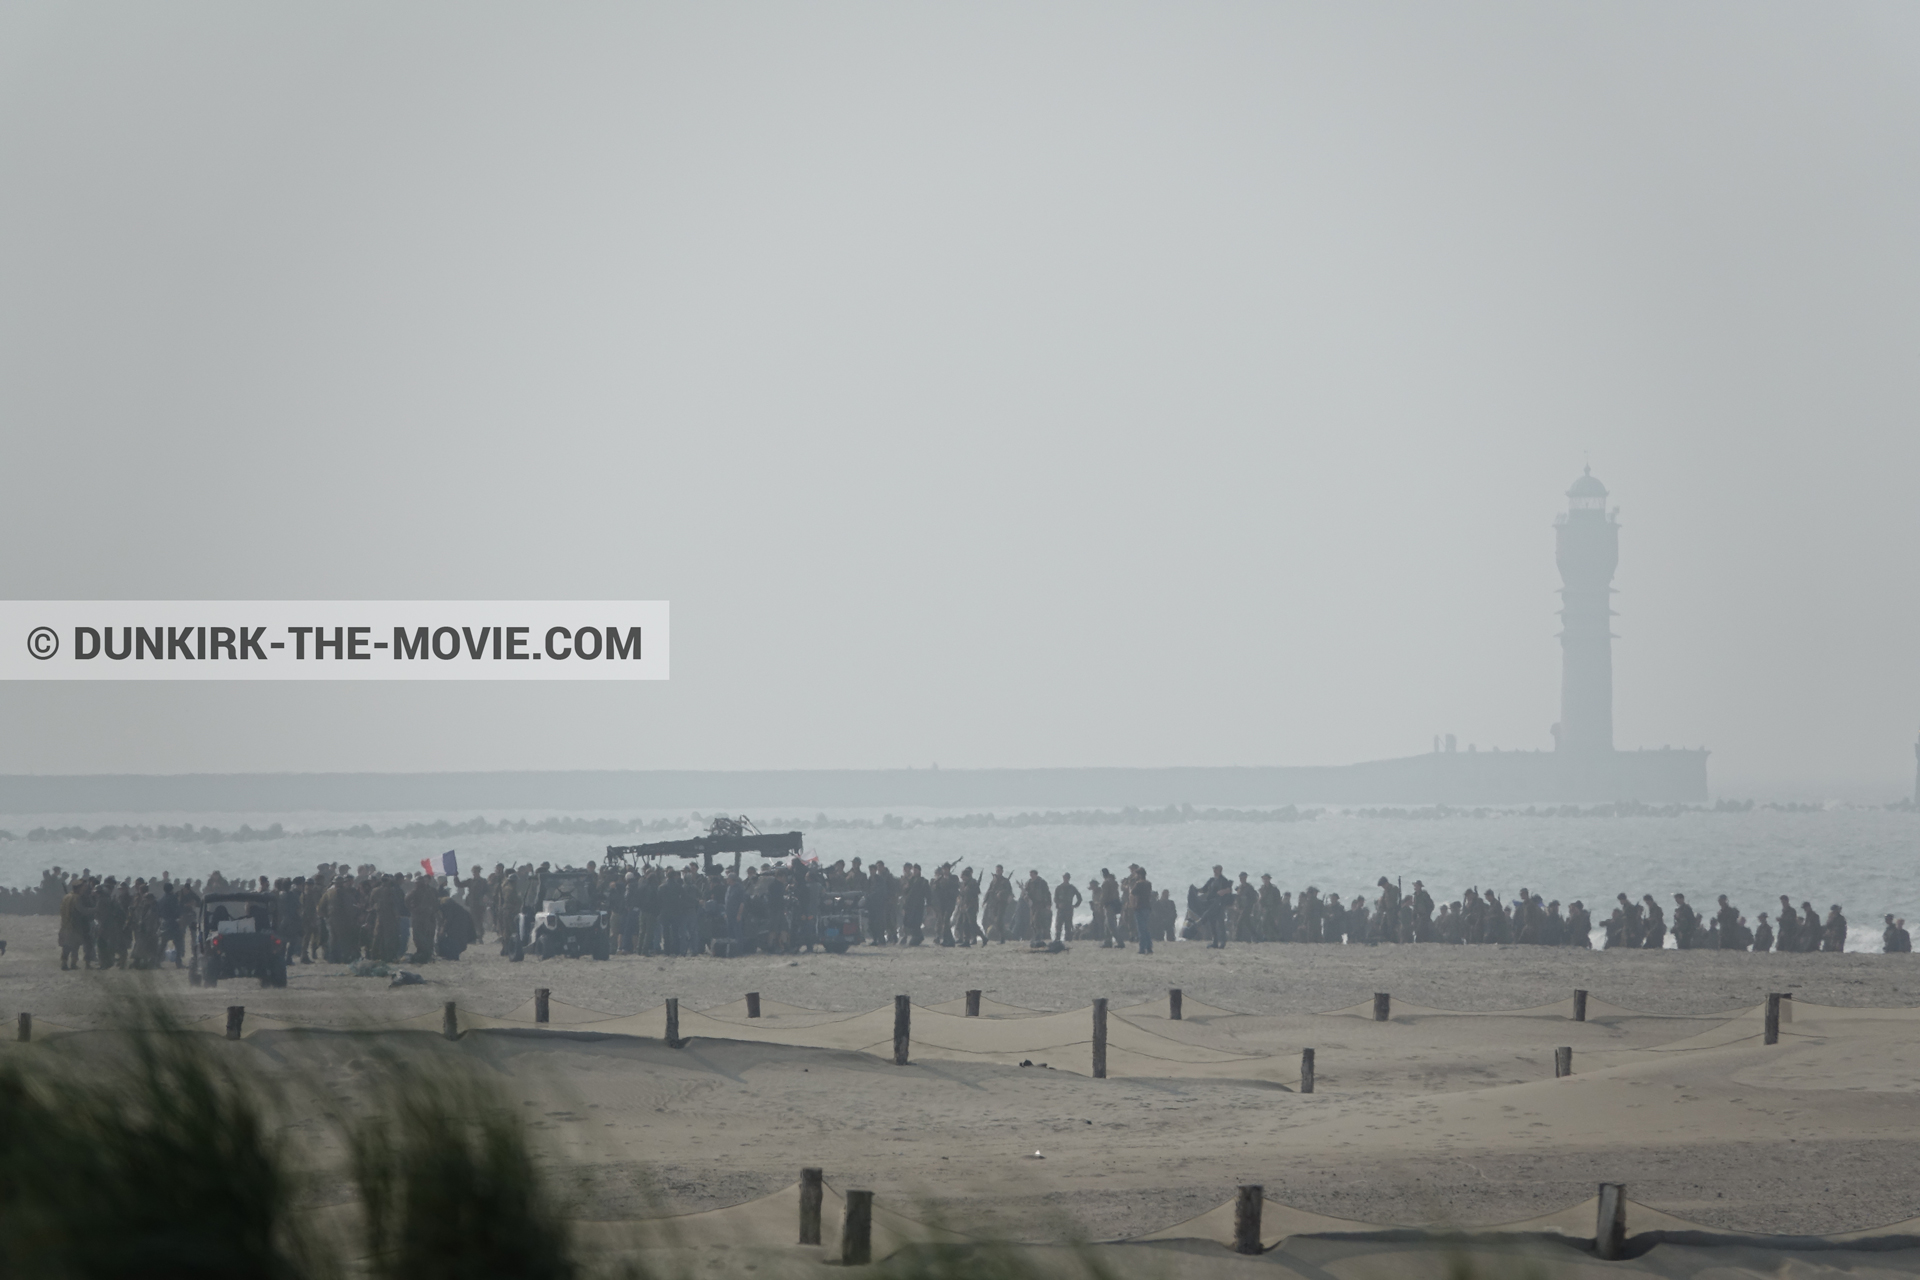 Fotos con extras, faro de Saint-Pol-sur-Mer, playa, equipo técnica,  durante el rodaje de la película Dunkerque de Nolan